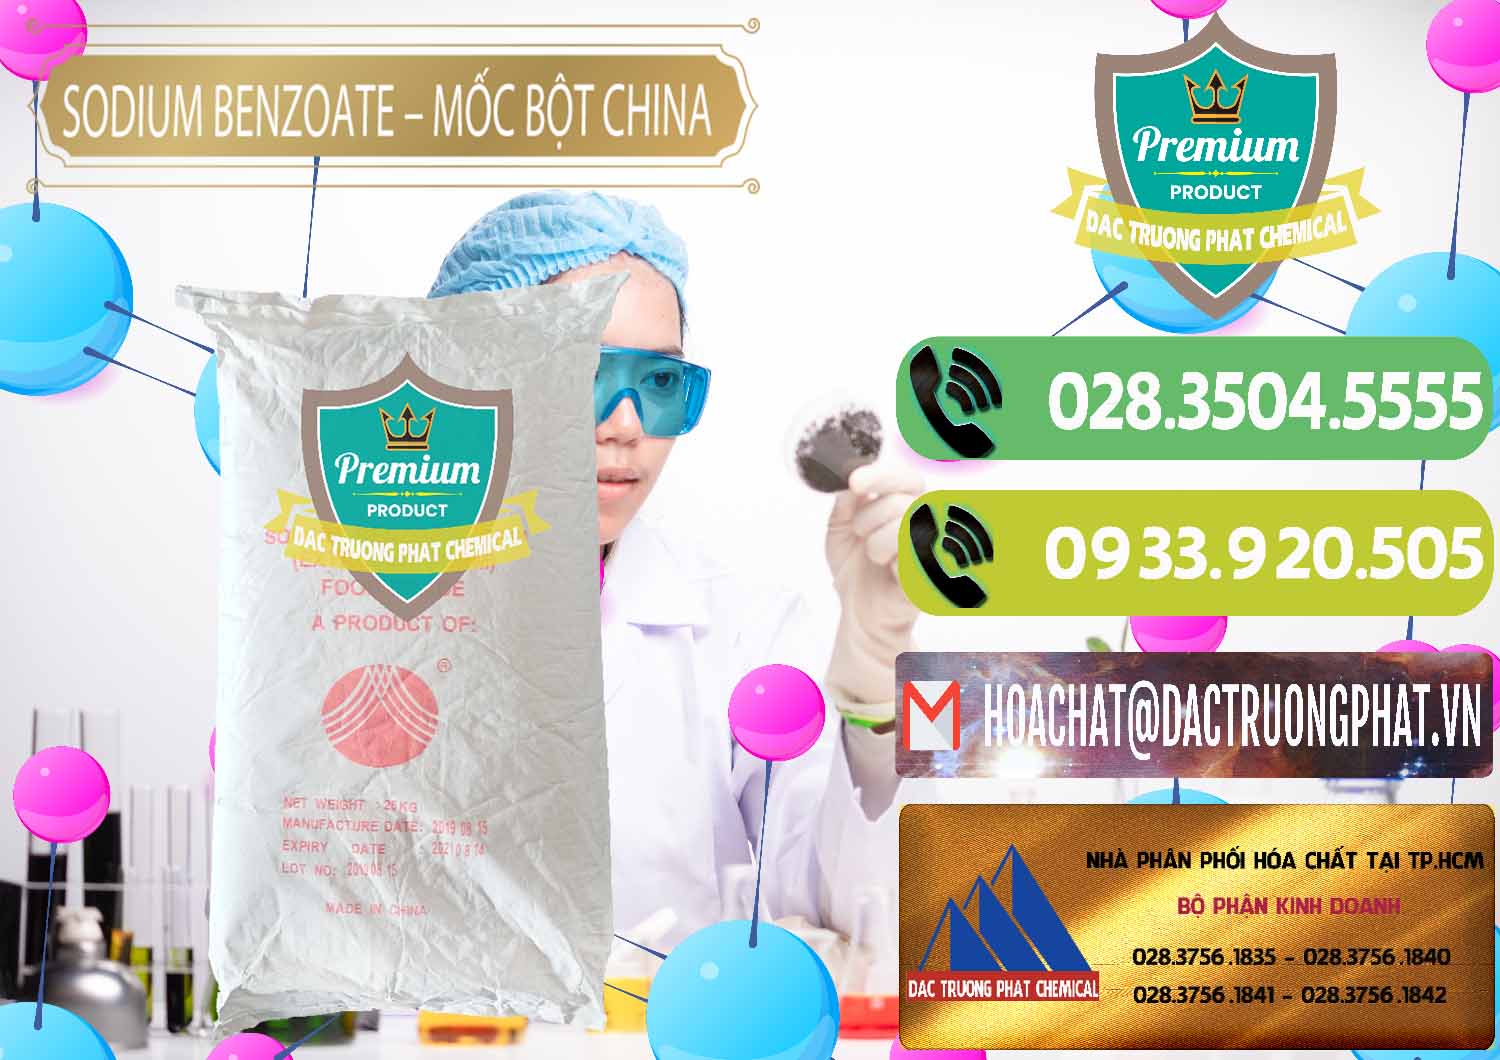 Cung cấp & bán Sodium Benzoate - Mốc Bột Chữ Cam Food Grade Trung Quốc China - 0135 - Cung cấp - nhập khẩu hóa chất tại TP.HCM - hoachatmientay.vn